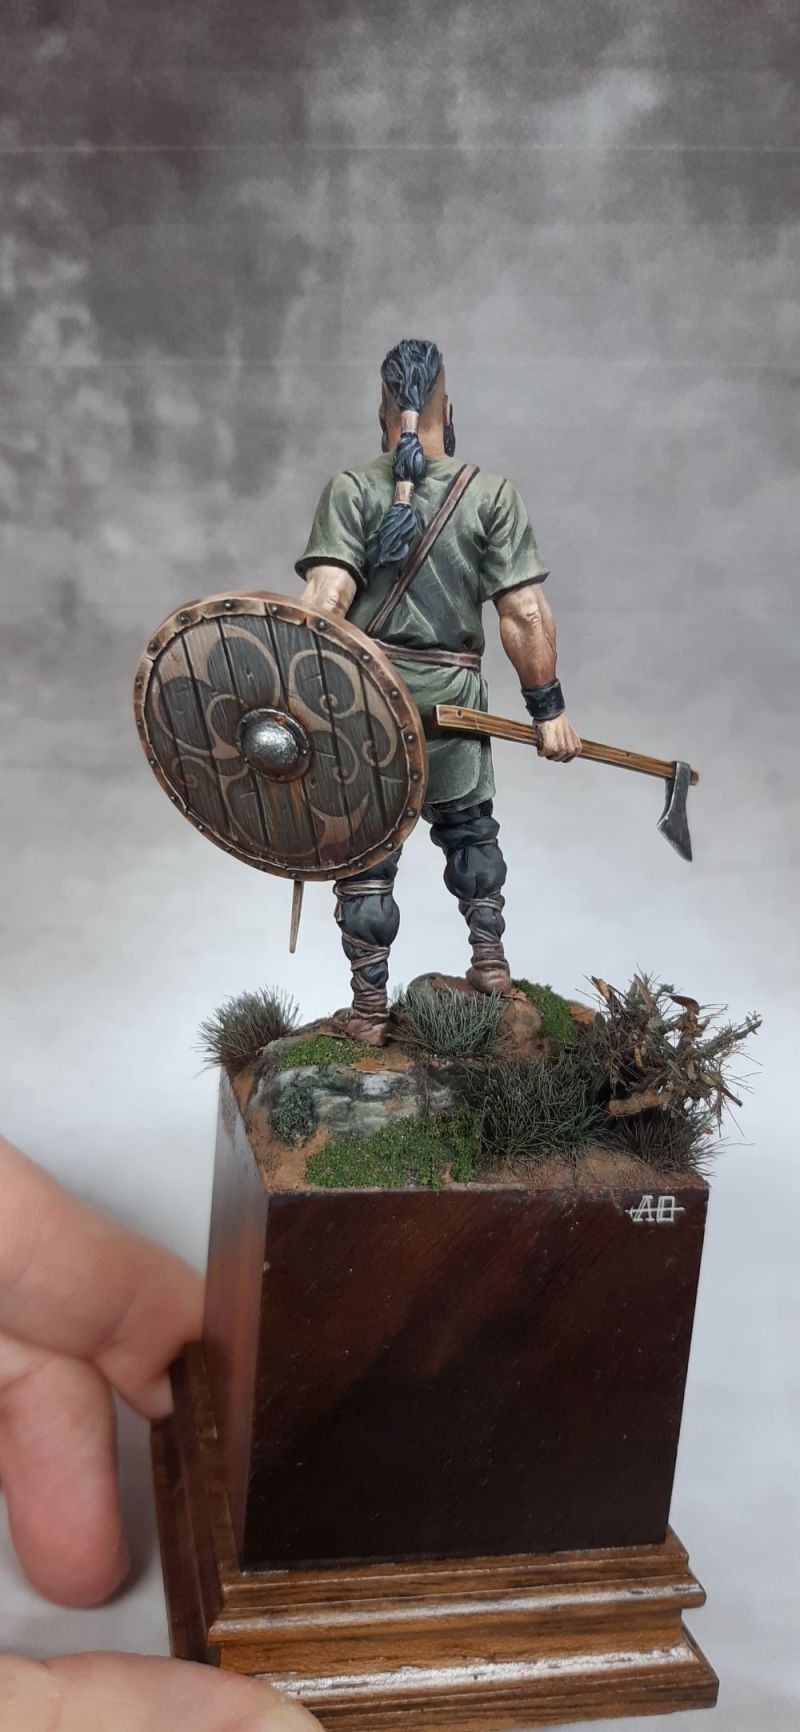 Viking Raider 795,Ireland